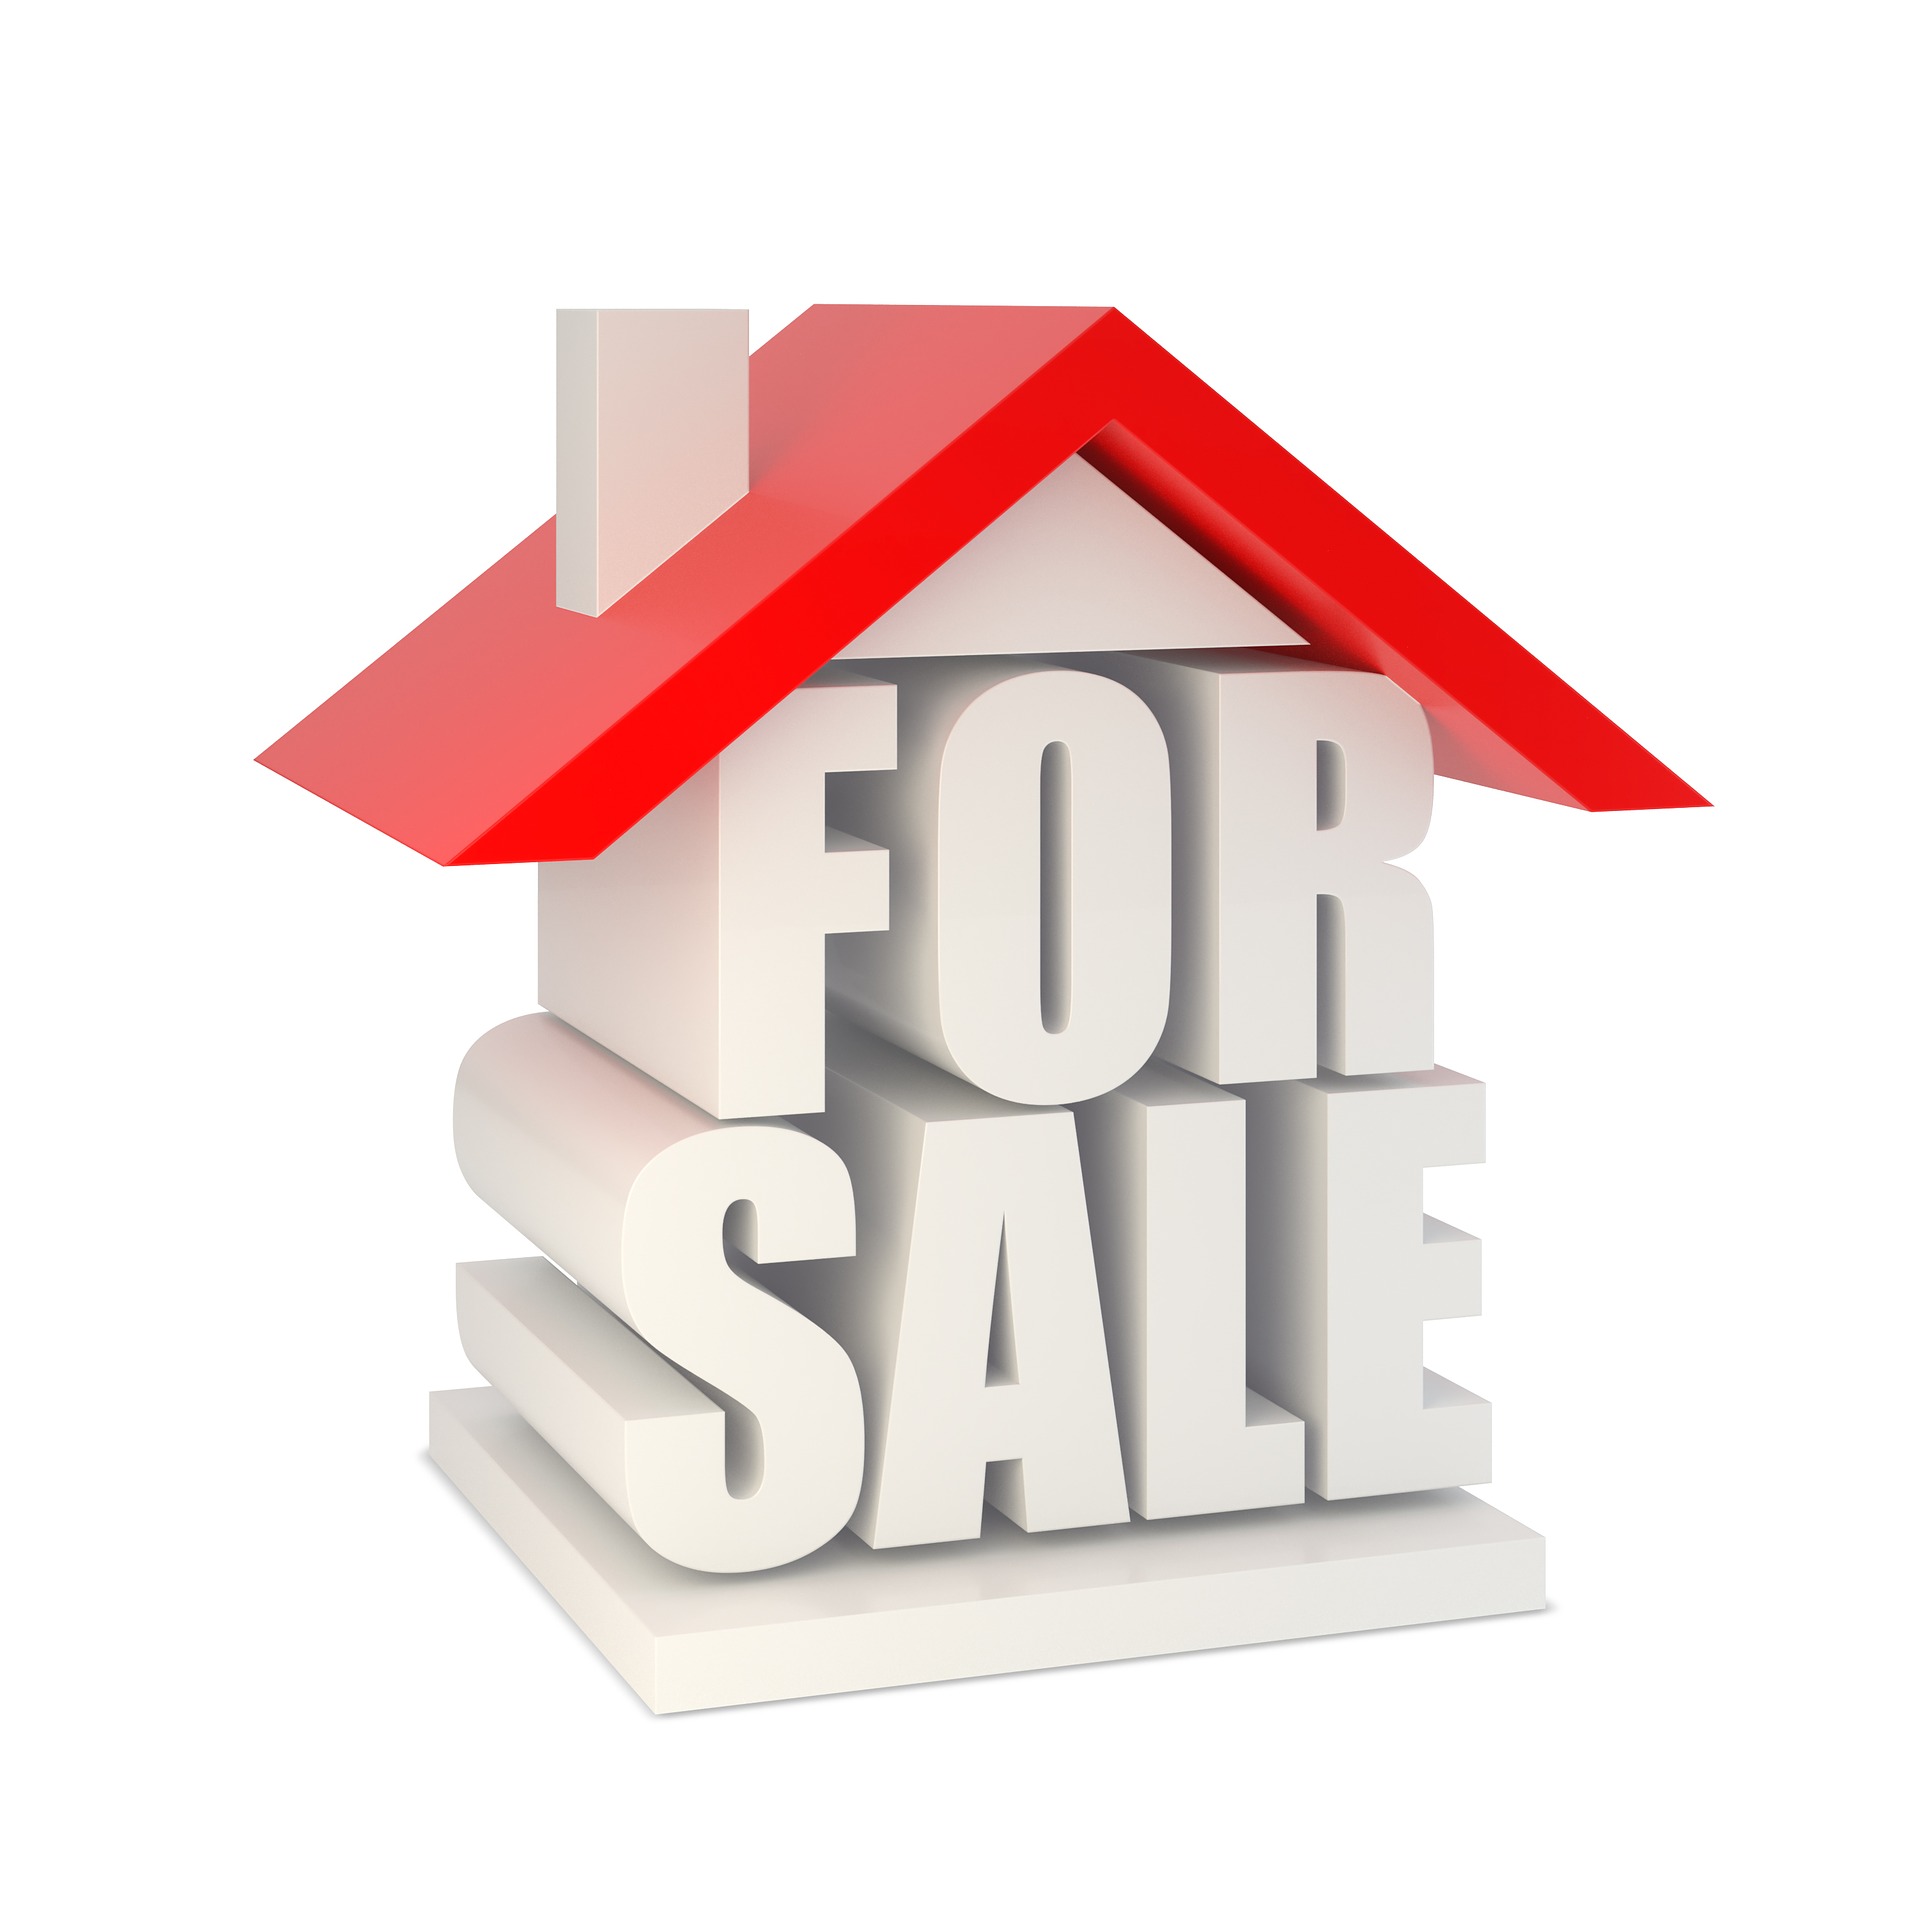 Huizenprijzen blijven stijgen, gemiddeld kost een huis 345.000 euro